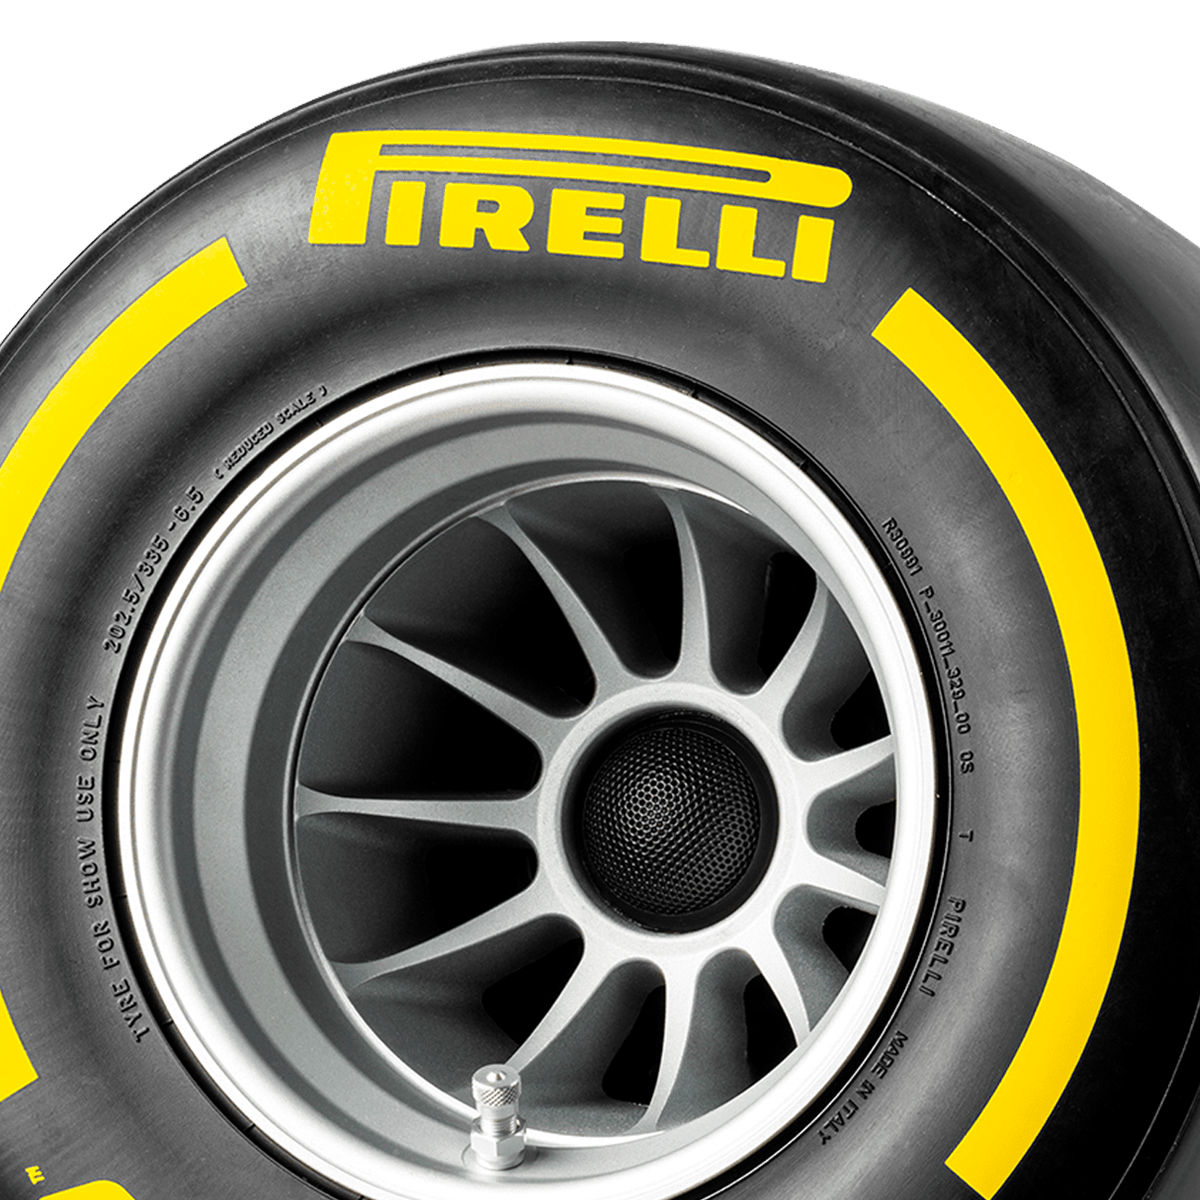 Pirelli P ZERO™ hi-fi di lusso colore giallo